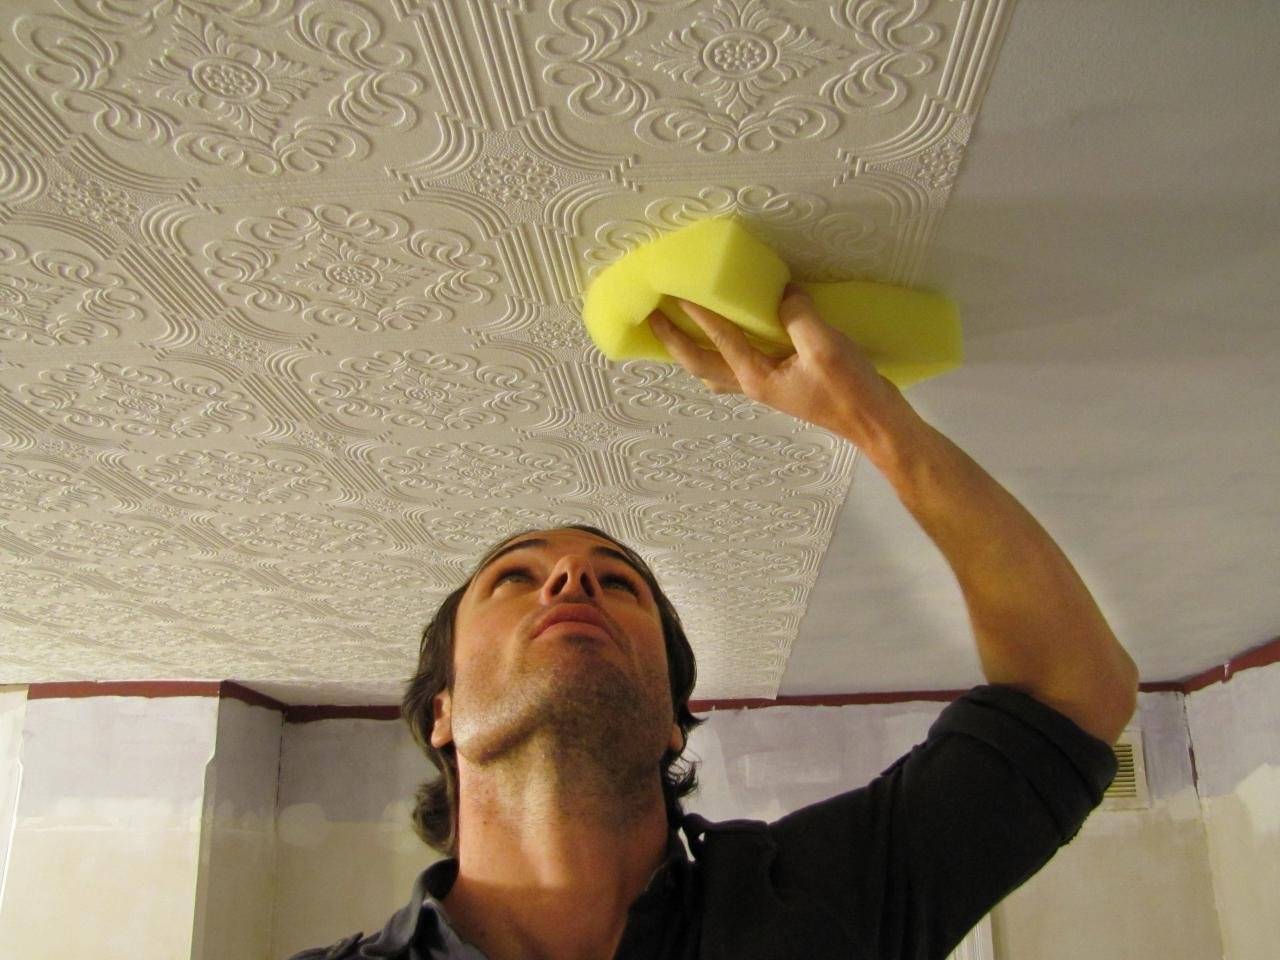 Чем покрасить потолочную плитку из пенопласта и как обновить водоэмульсионной краской